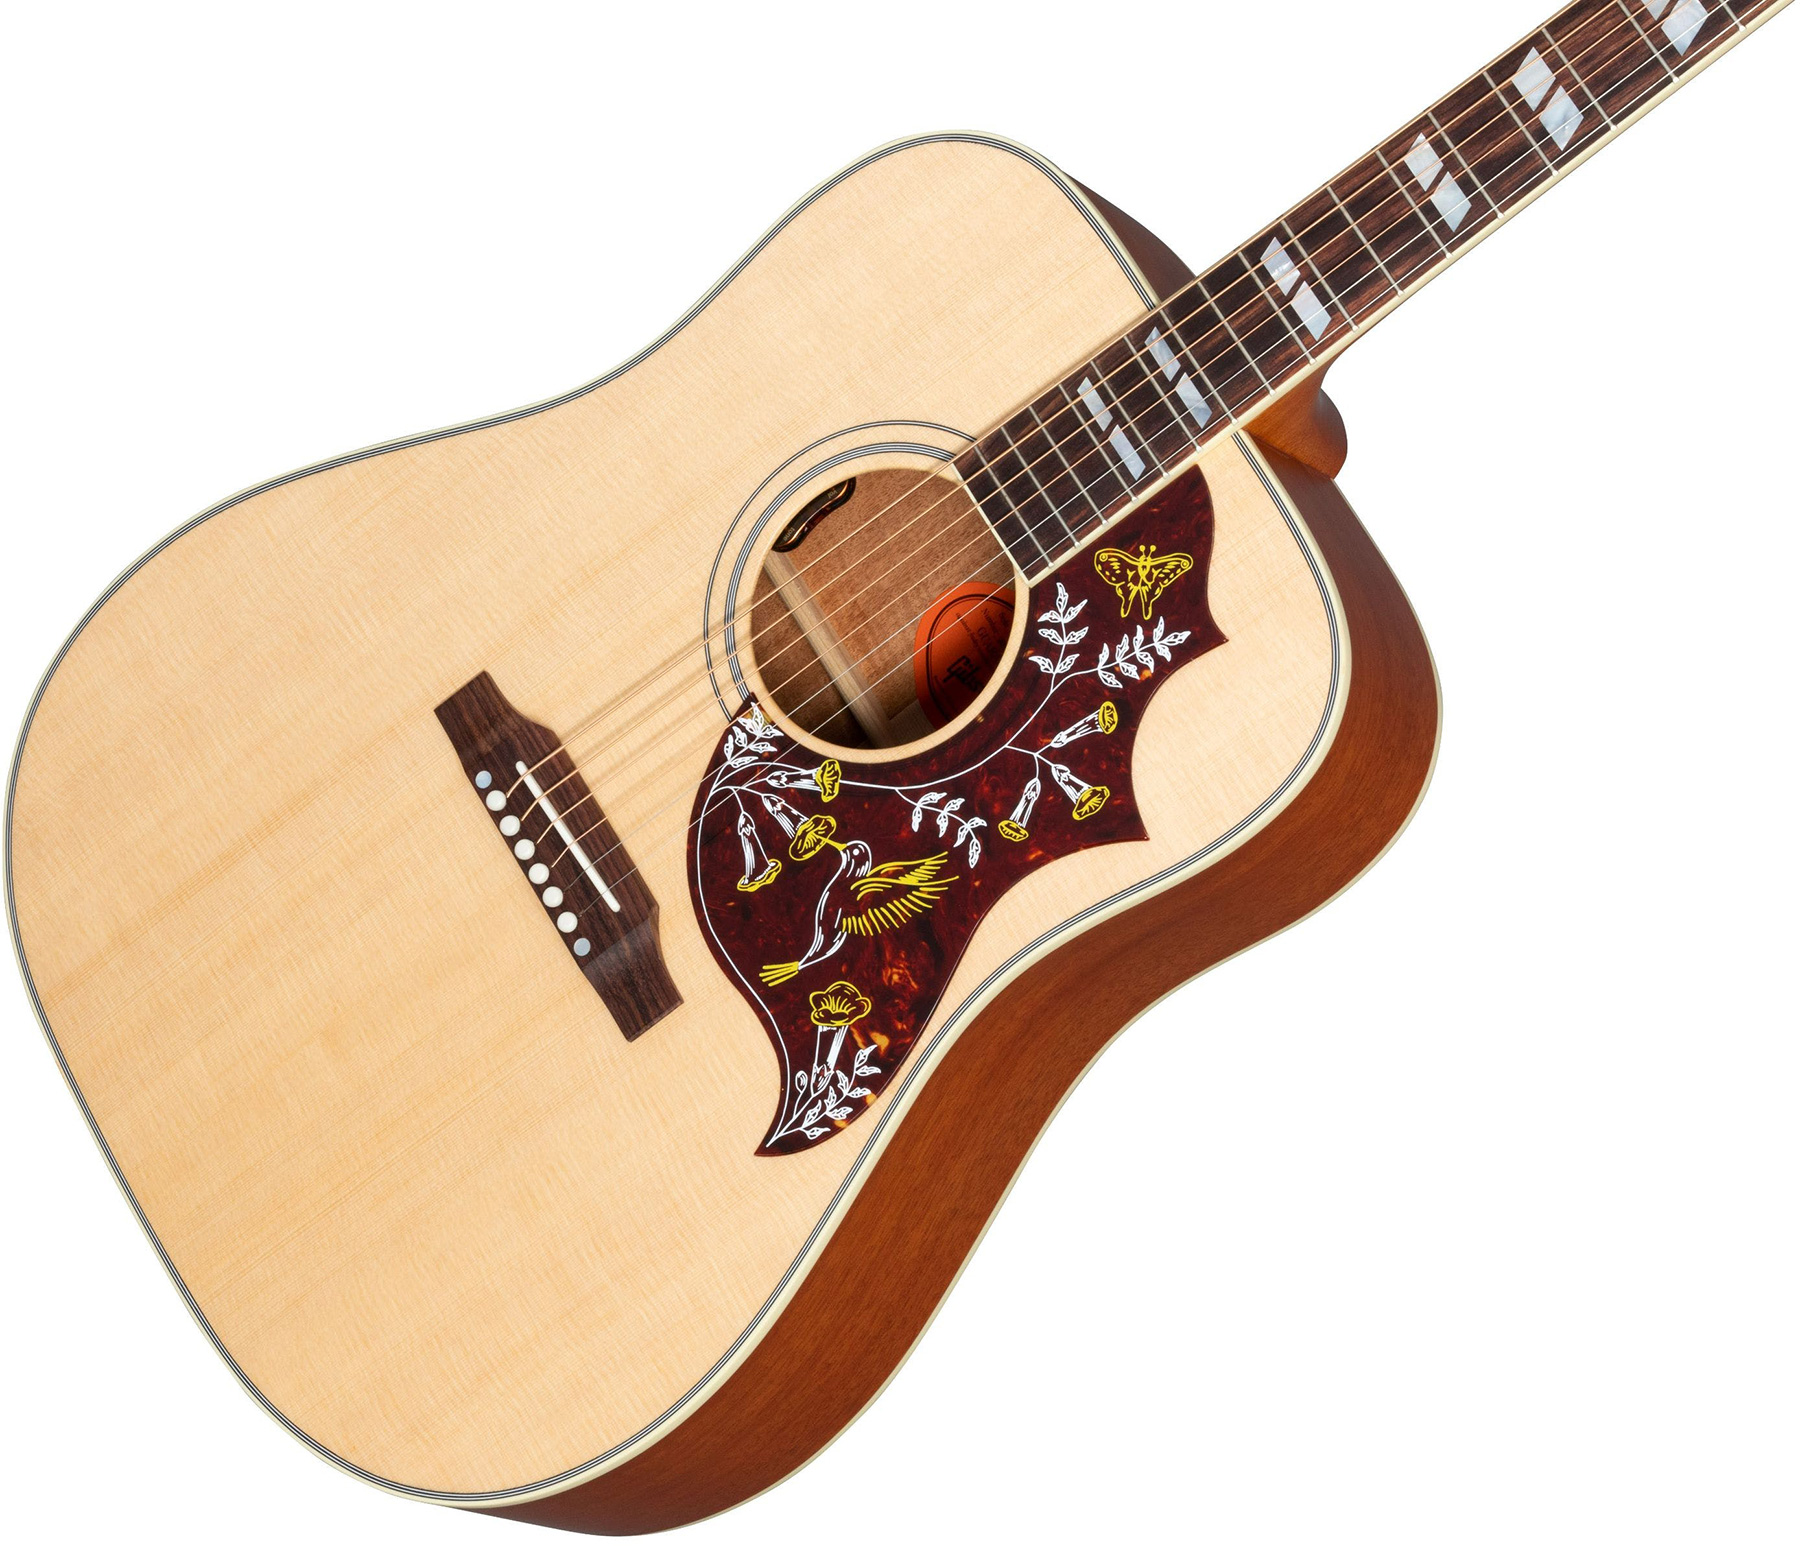 Gibson Hummingbird Faded Original Dreadnought Epicea Acajou Rw - Antique Natural - Guitarra acústica & electro - Variation 3